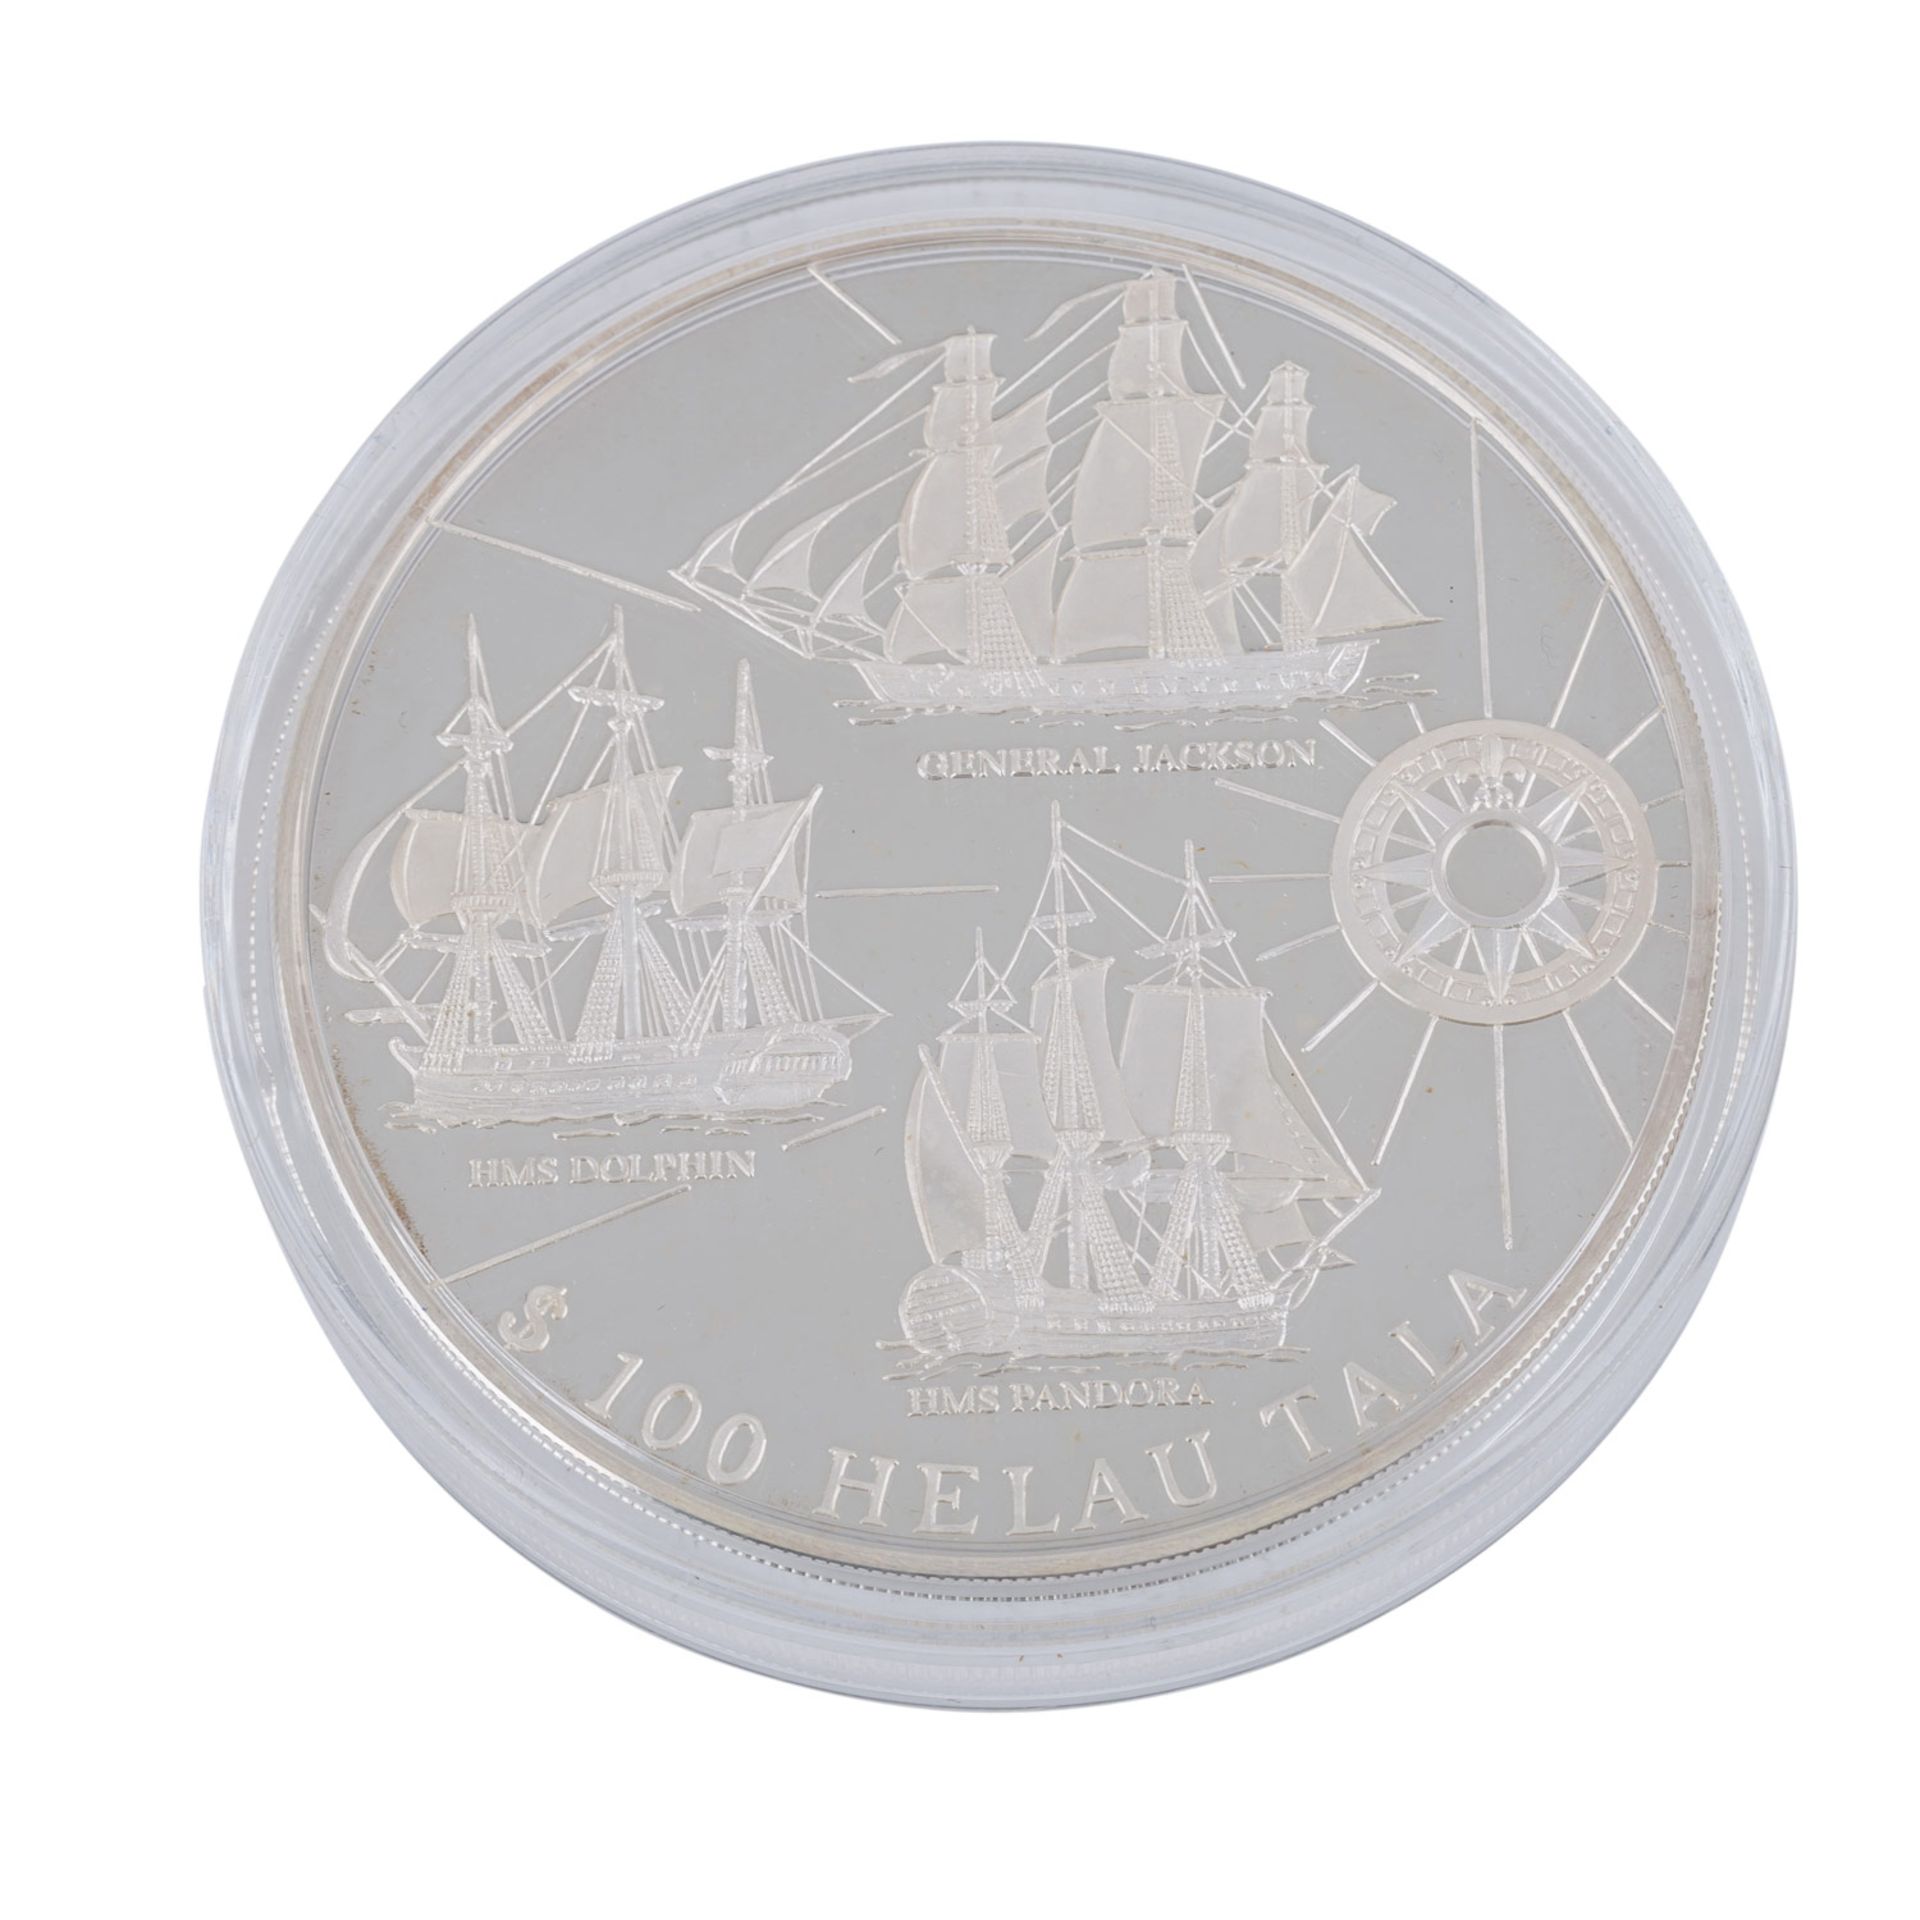 Tokelau unter neuseeländischer Verwaltung - 1 kg Silber zu 100 Tala 1996,Segelschiffe General